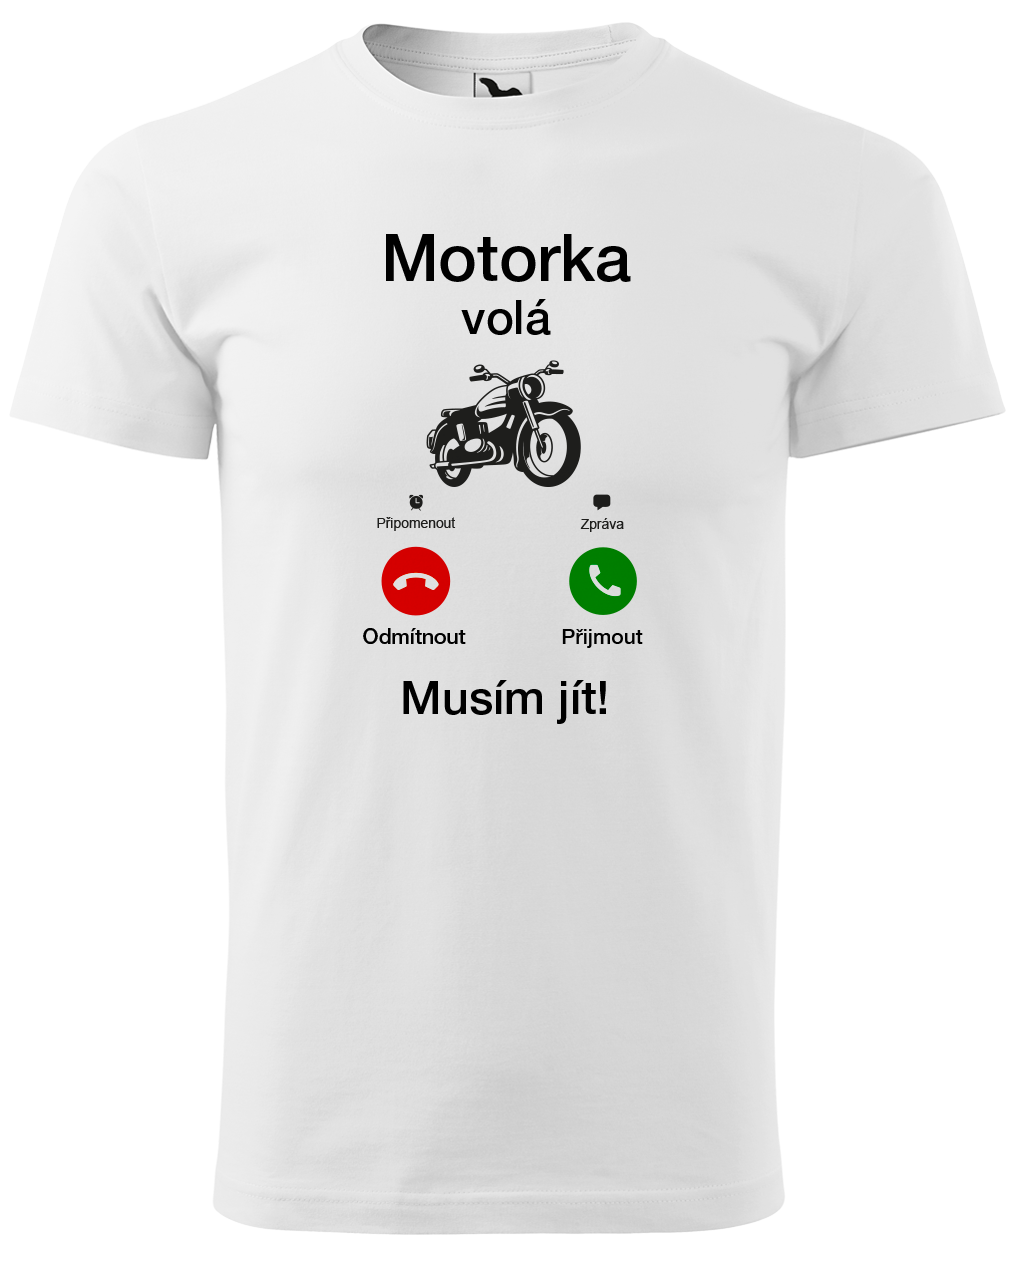 Tričko pro motorkáře - Motorka volá Velikost: M, Barva: Bílá (00)